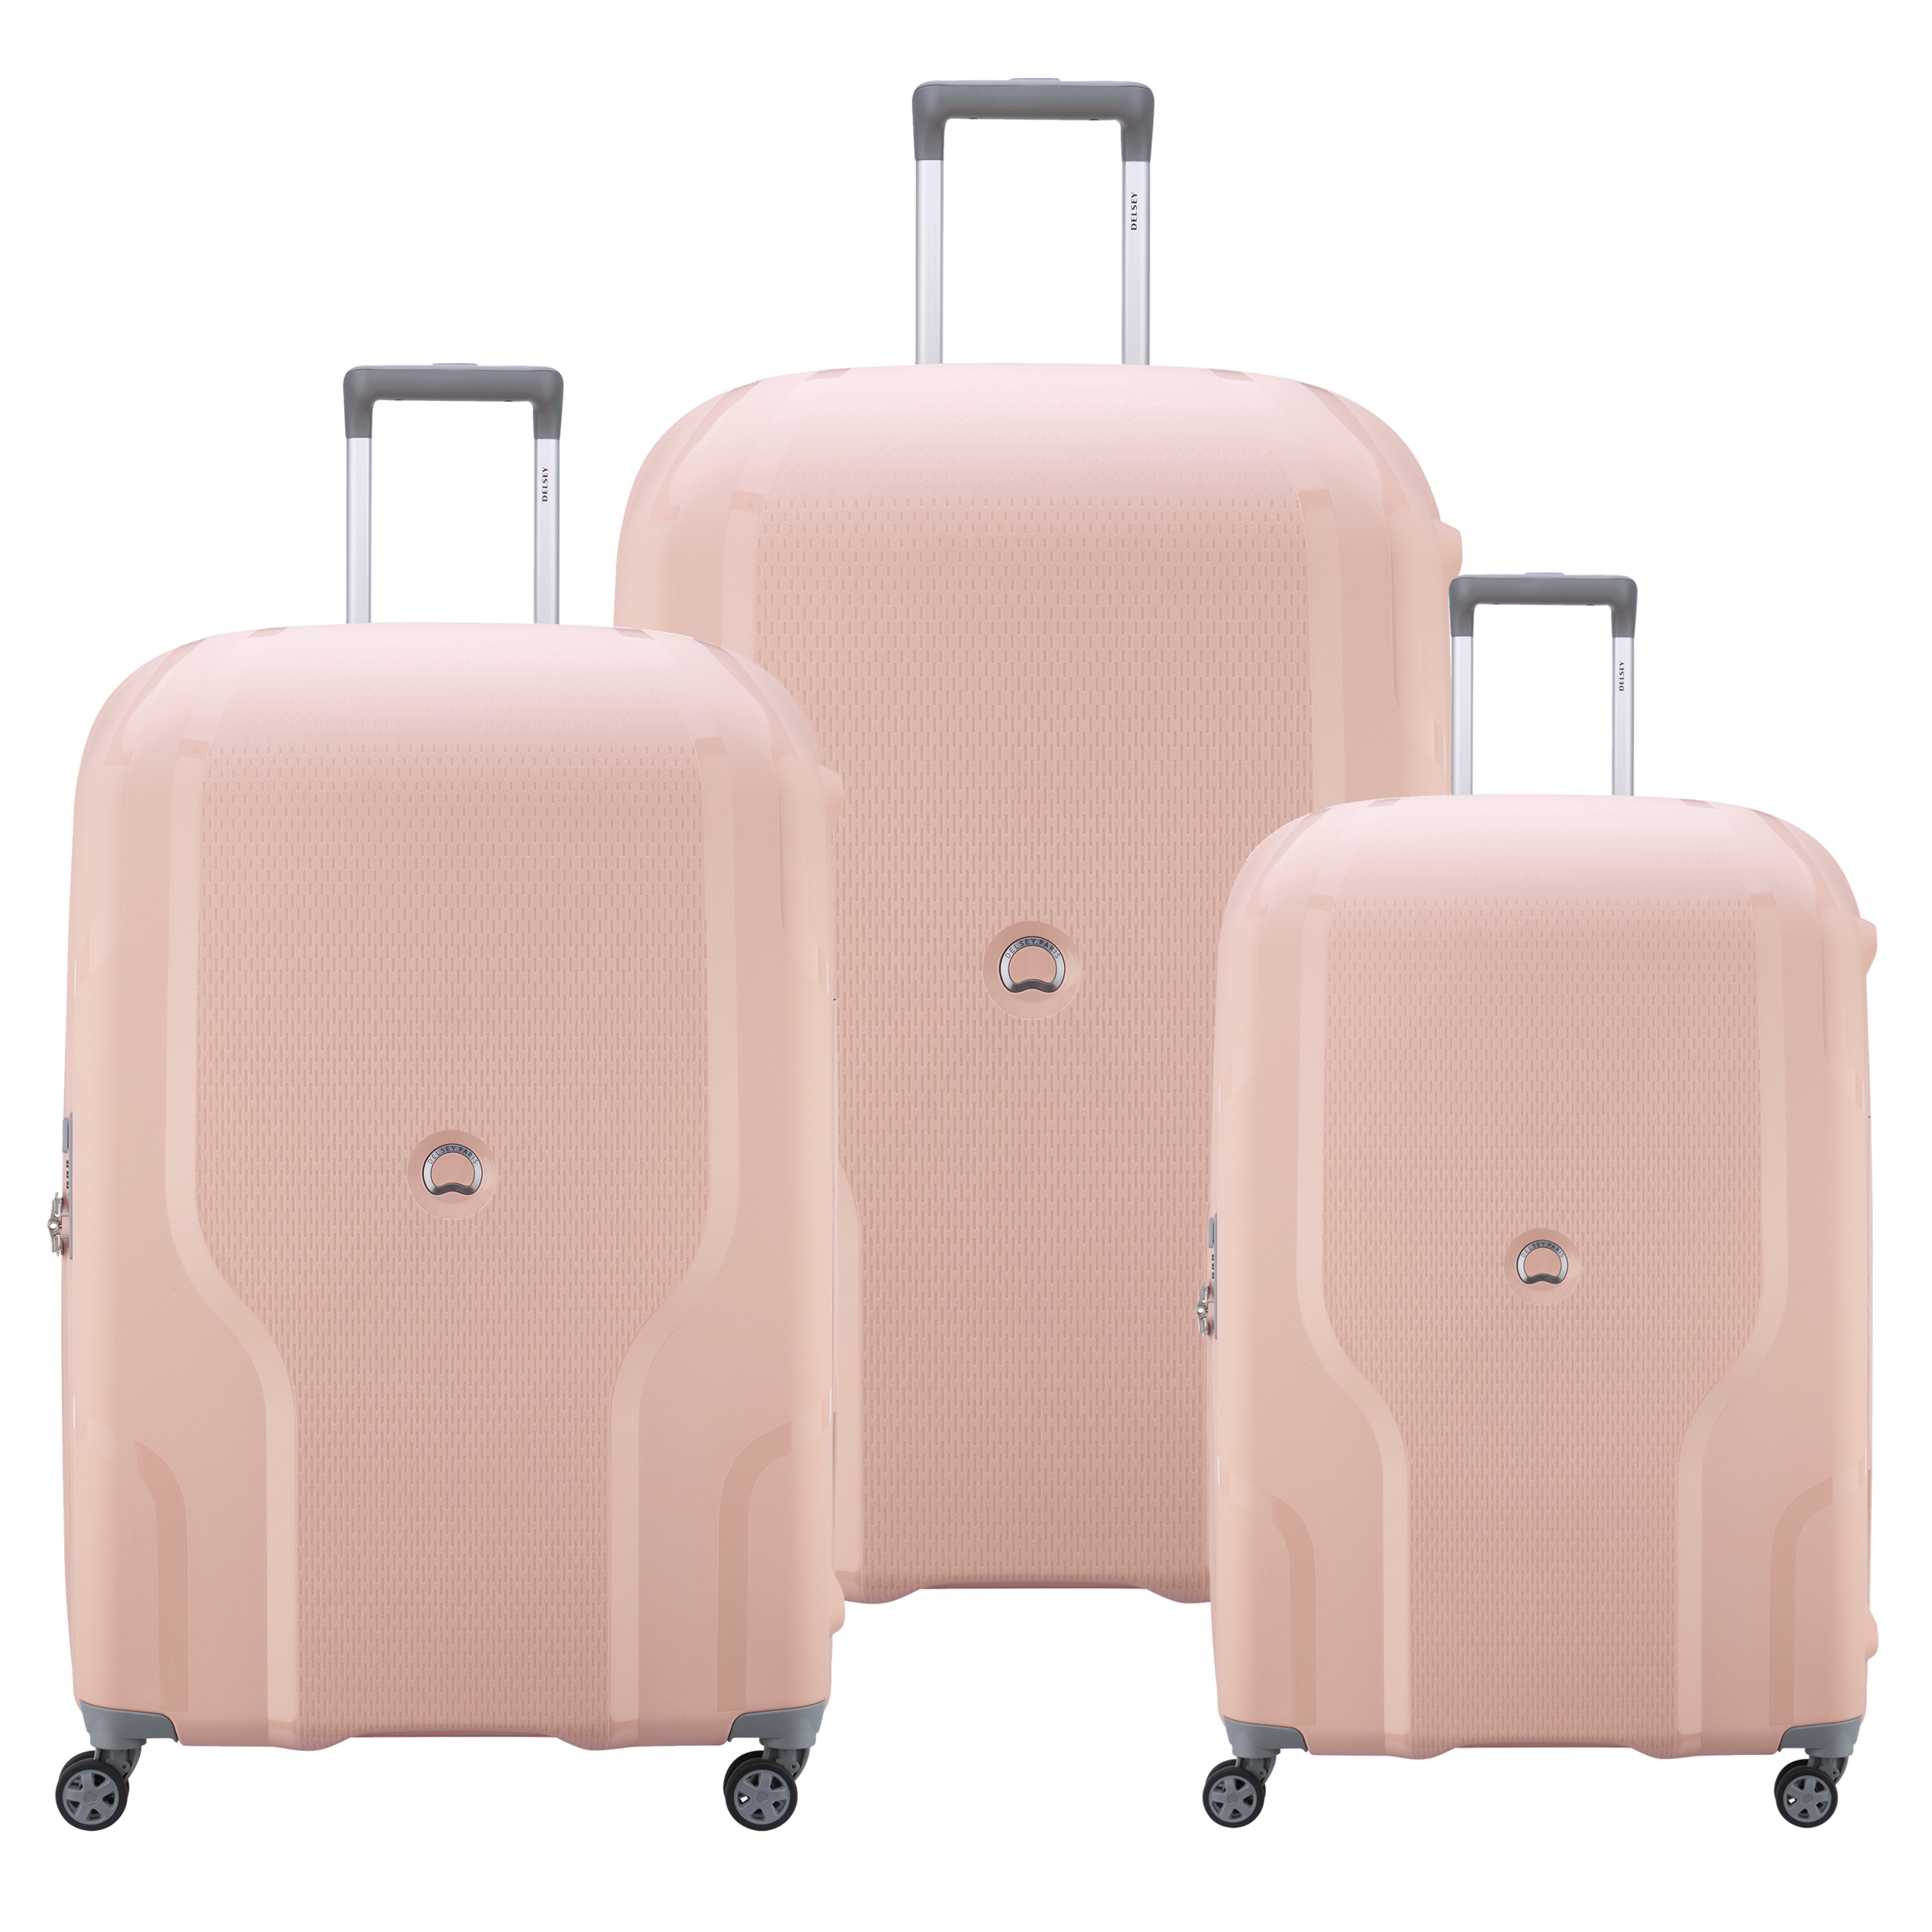 نکته خرید - قیمت روز چمدان دلسی مدل کلاول کد 3845980 مجموعه سه عددی خرید